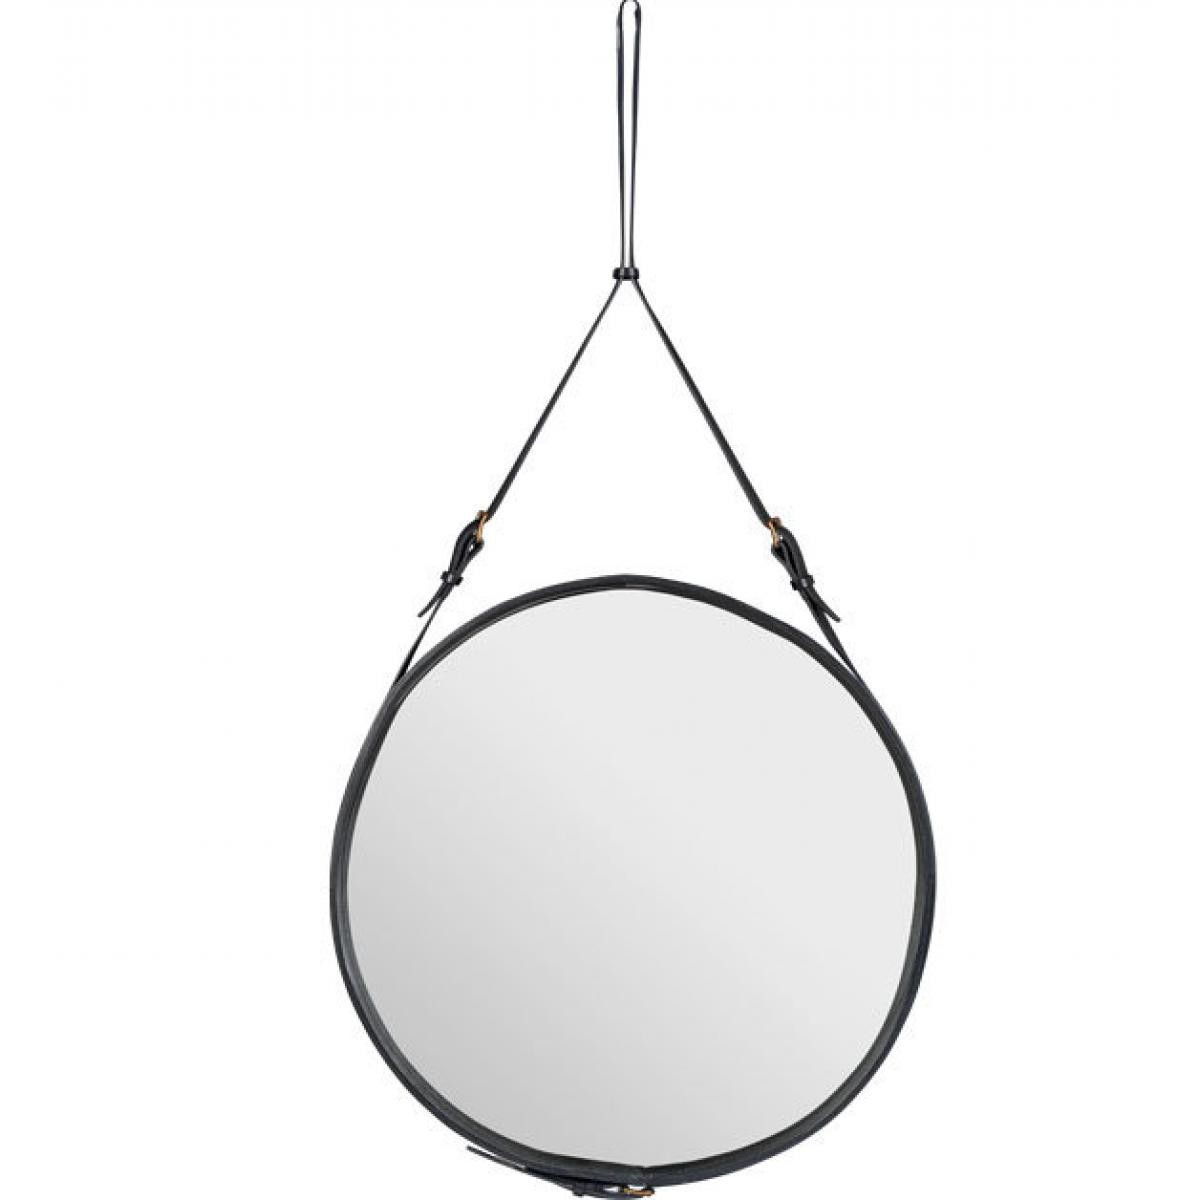 Gubi - Adnet miroir Circulaire - noir - Ø 45 cm - Miroirs